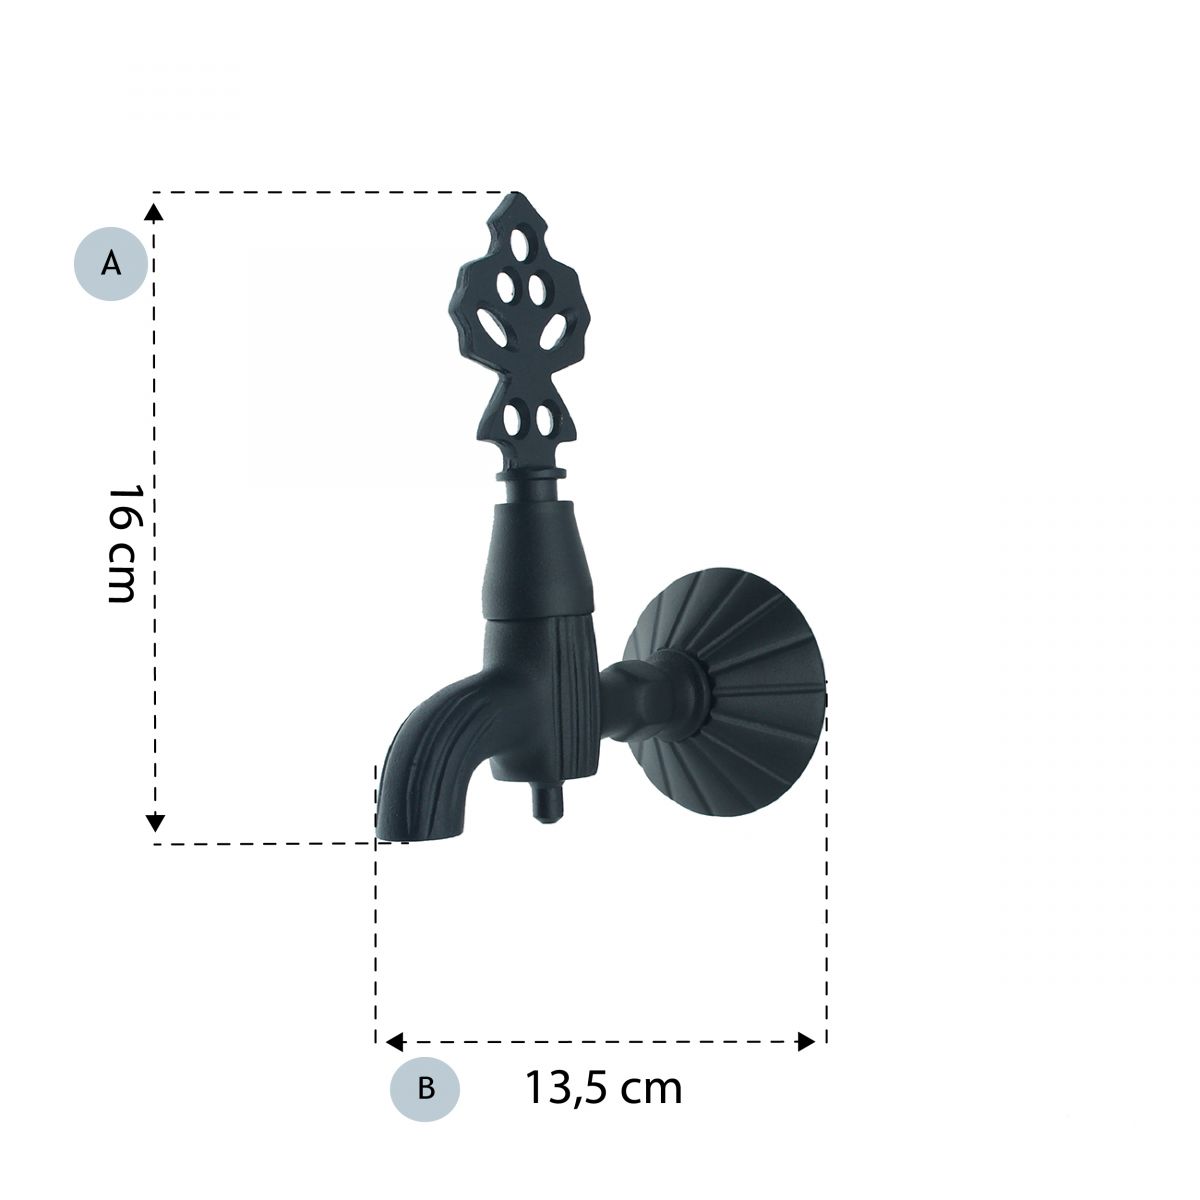 FKN İkili Lüx Siyah Osmanlı Musluk Camii şadırvanlarında  Hamamlarda  Spa merkezlerinde  Otellerde  Evlerde  Park ve bahçelerde kullanıma uygundur. Nostaljik görünüme sahiptir.  2 adet takım olarak gönderilmektedir. 3 Yıl garantilidir. %100 Pirinç mamülden imal edilmiştir. 1.Kalite salmastra kullanı